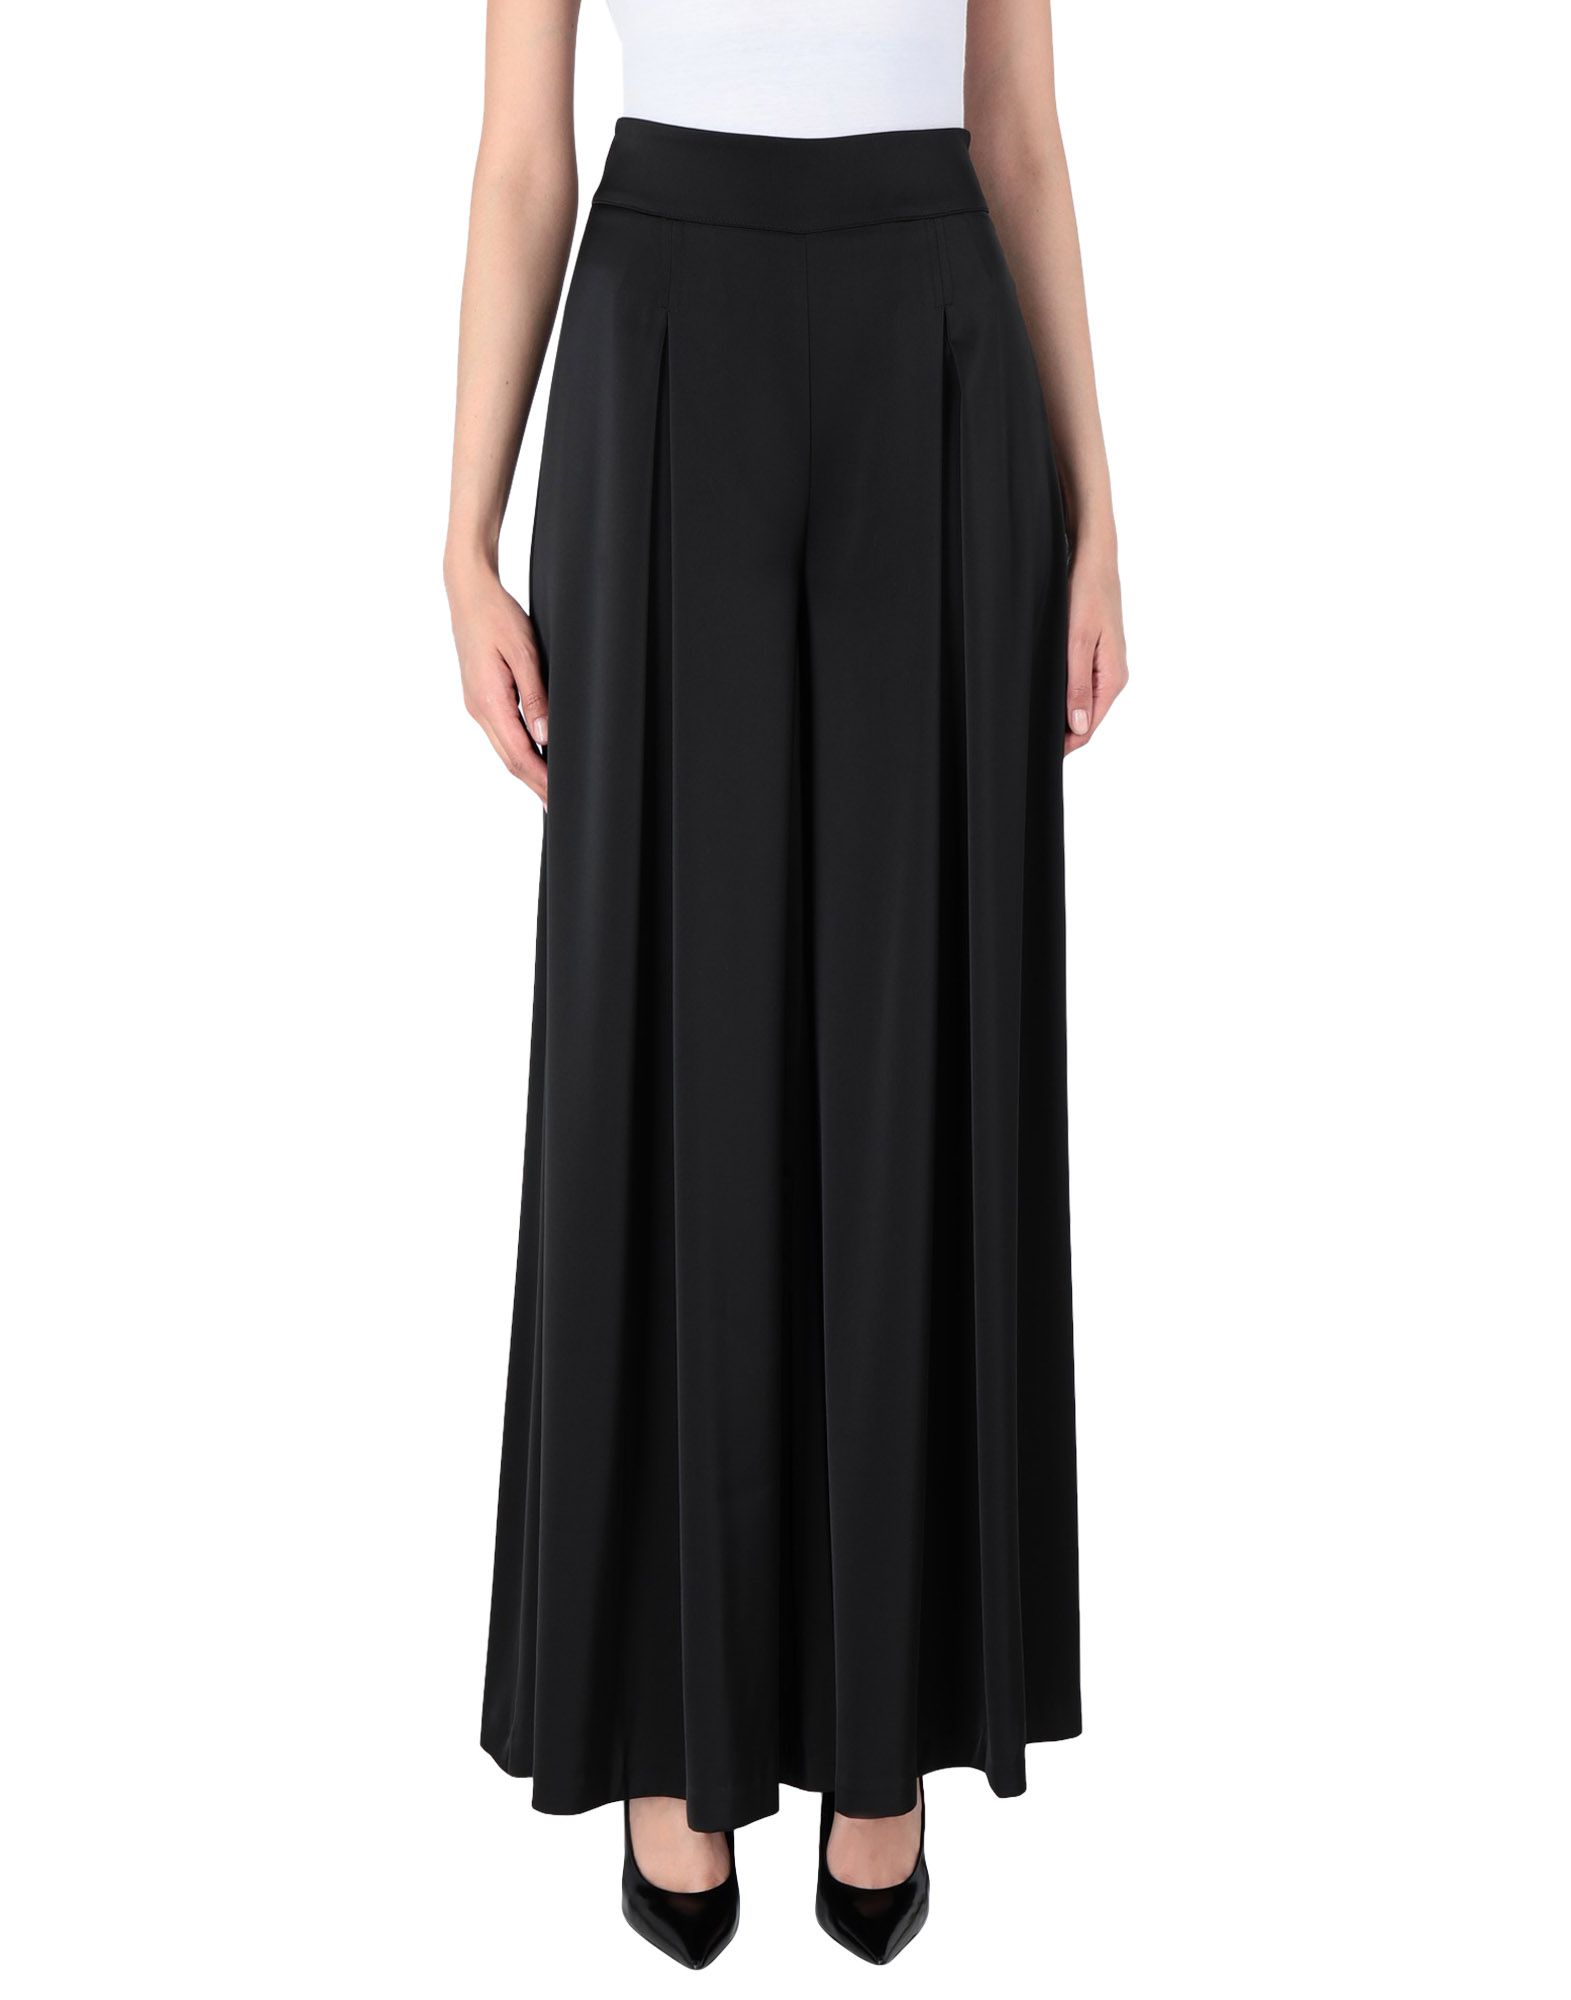 Длинная юбка  - Черный цвет